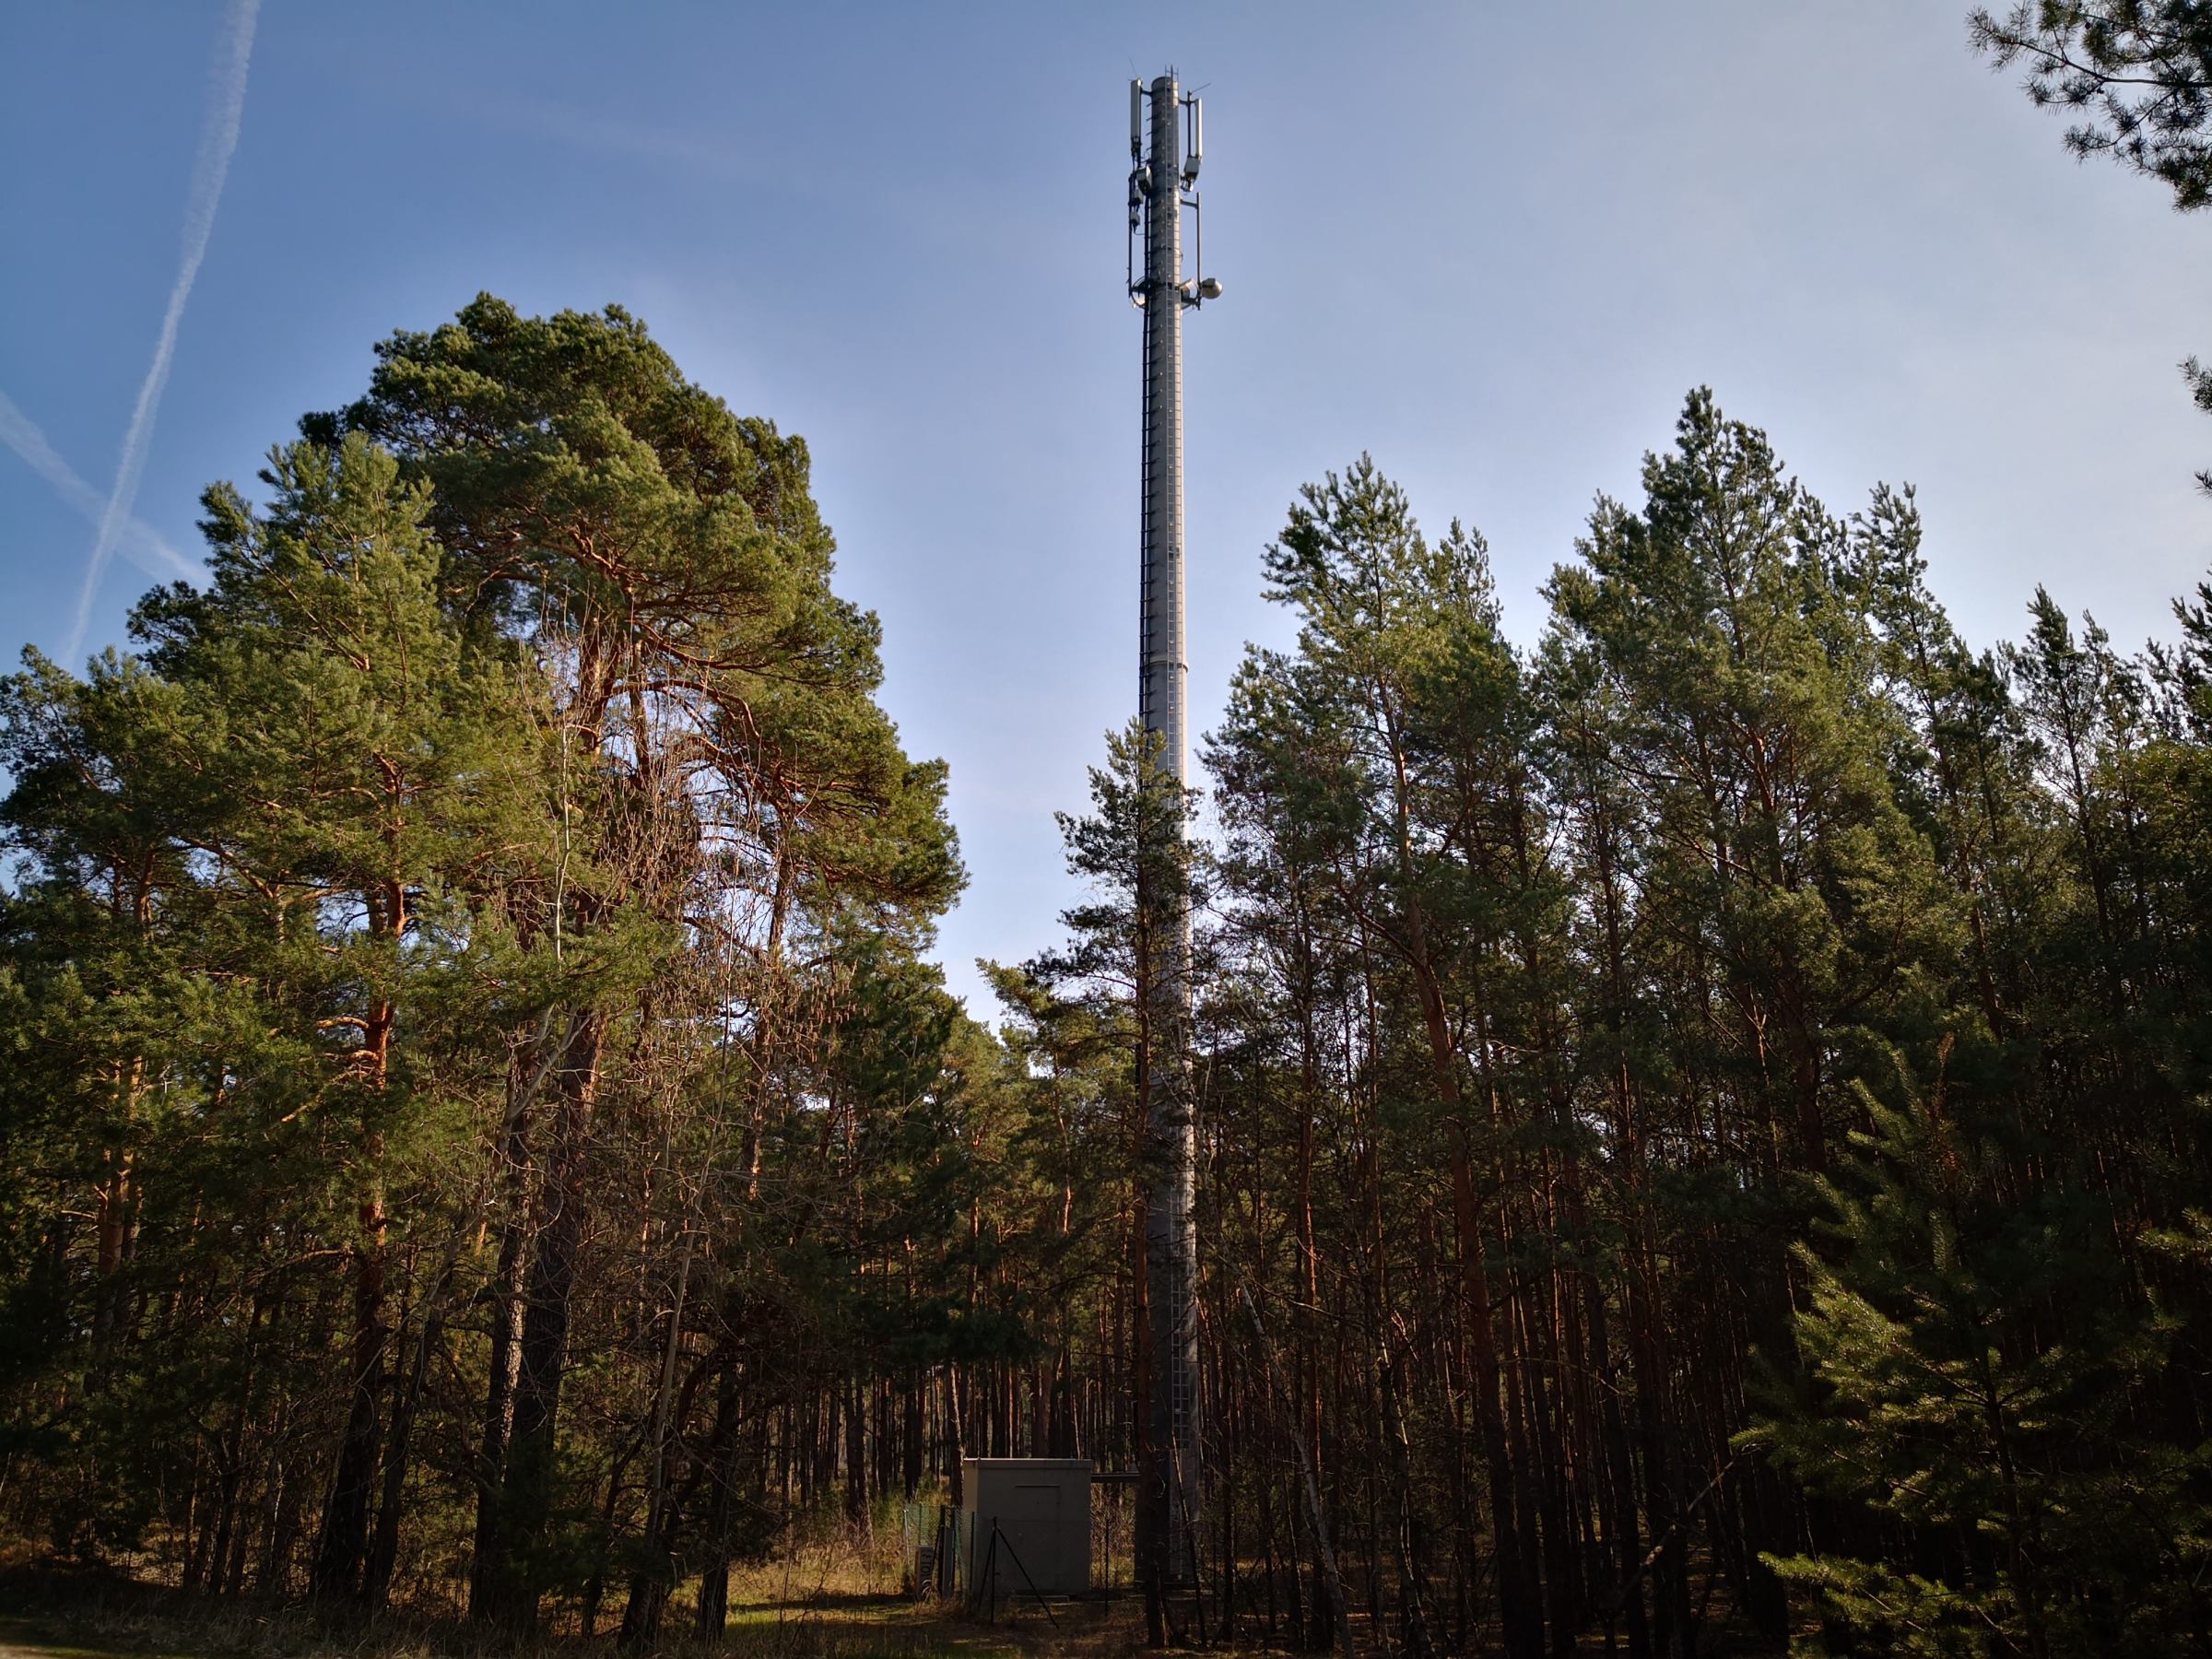 GSM-, LTE- & 5G-Frequenzen in Deutschland im Überblick